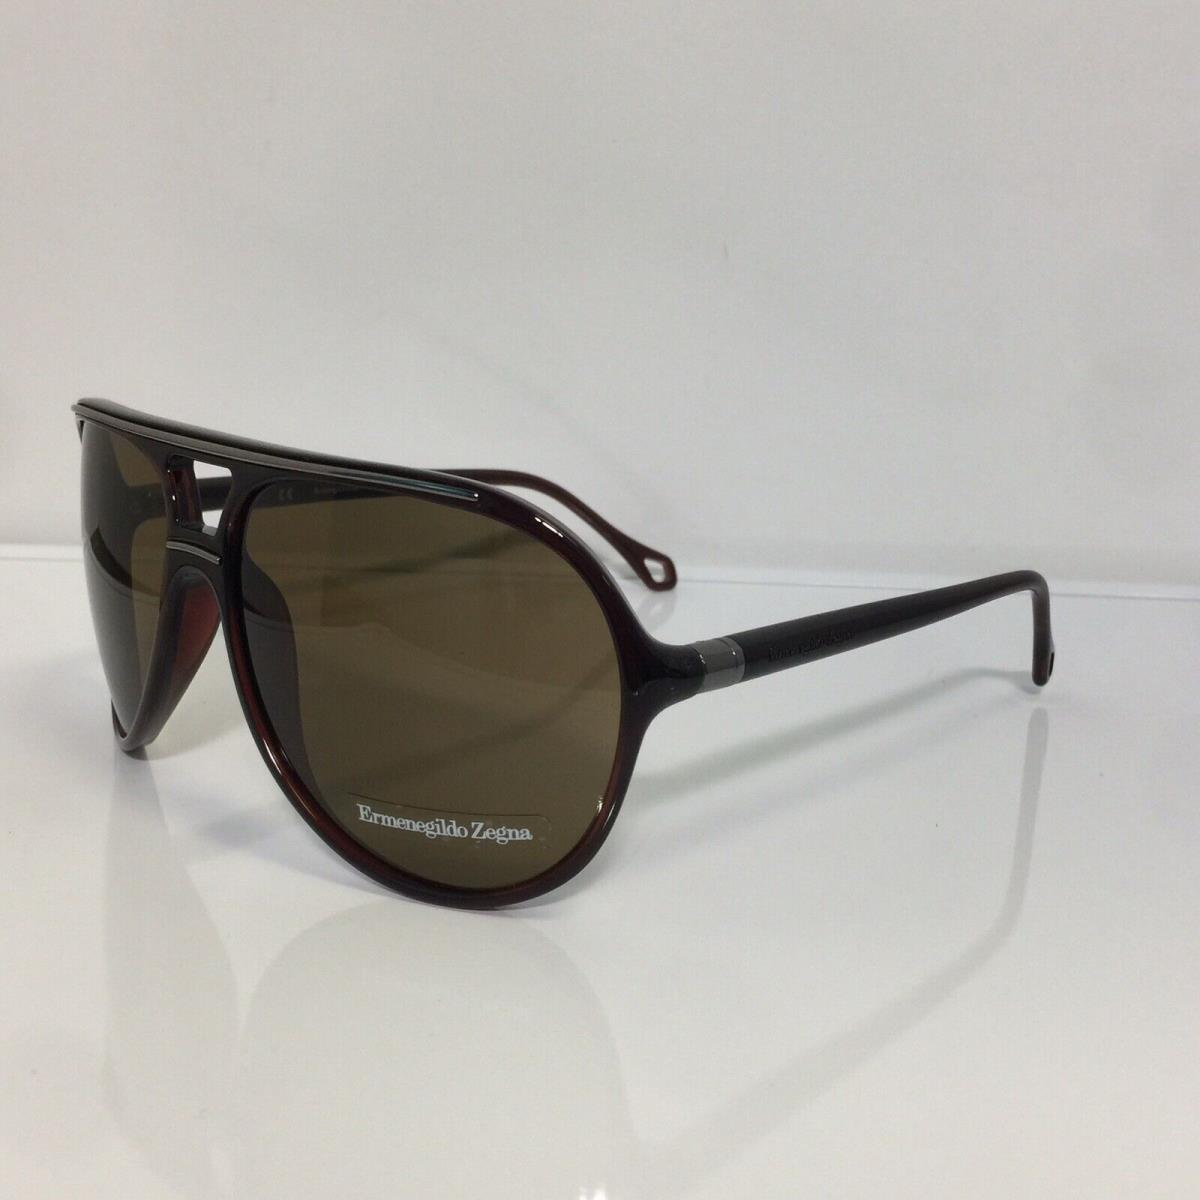 Ermenegildo Zegna 3576 0Z90 Brown Plastic Polarized Sunglasses